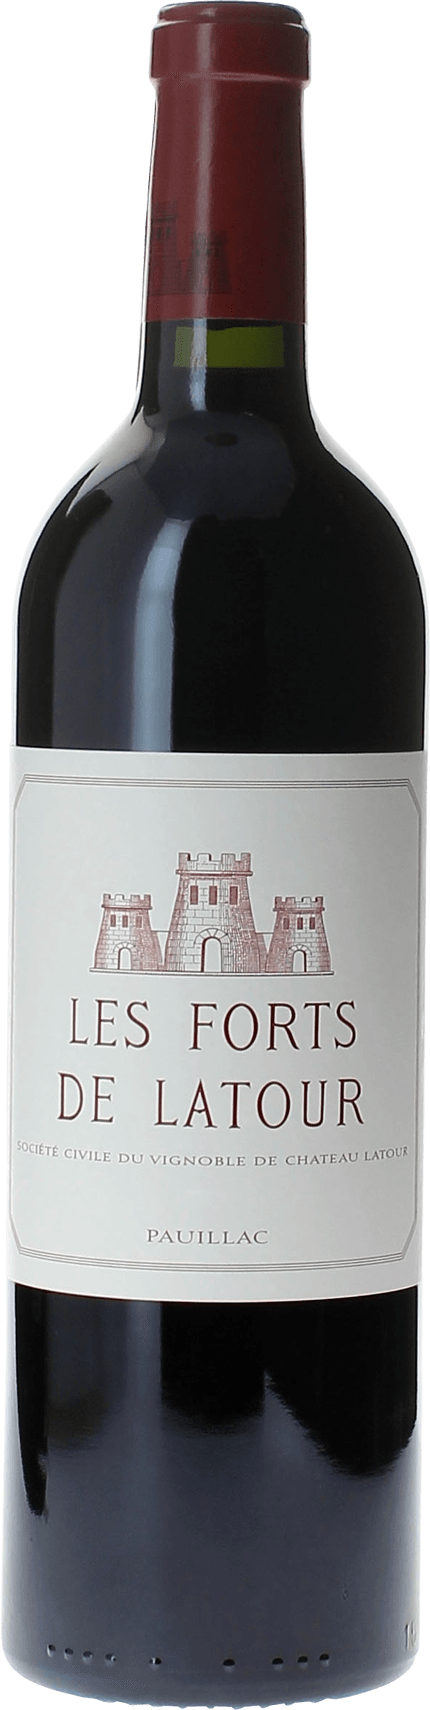 Les forts de latour 2012 2me vin de LATOUR Pauillac, Bordeaux rouge